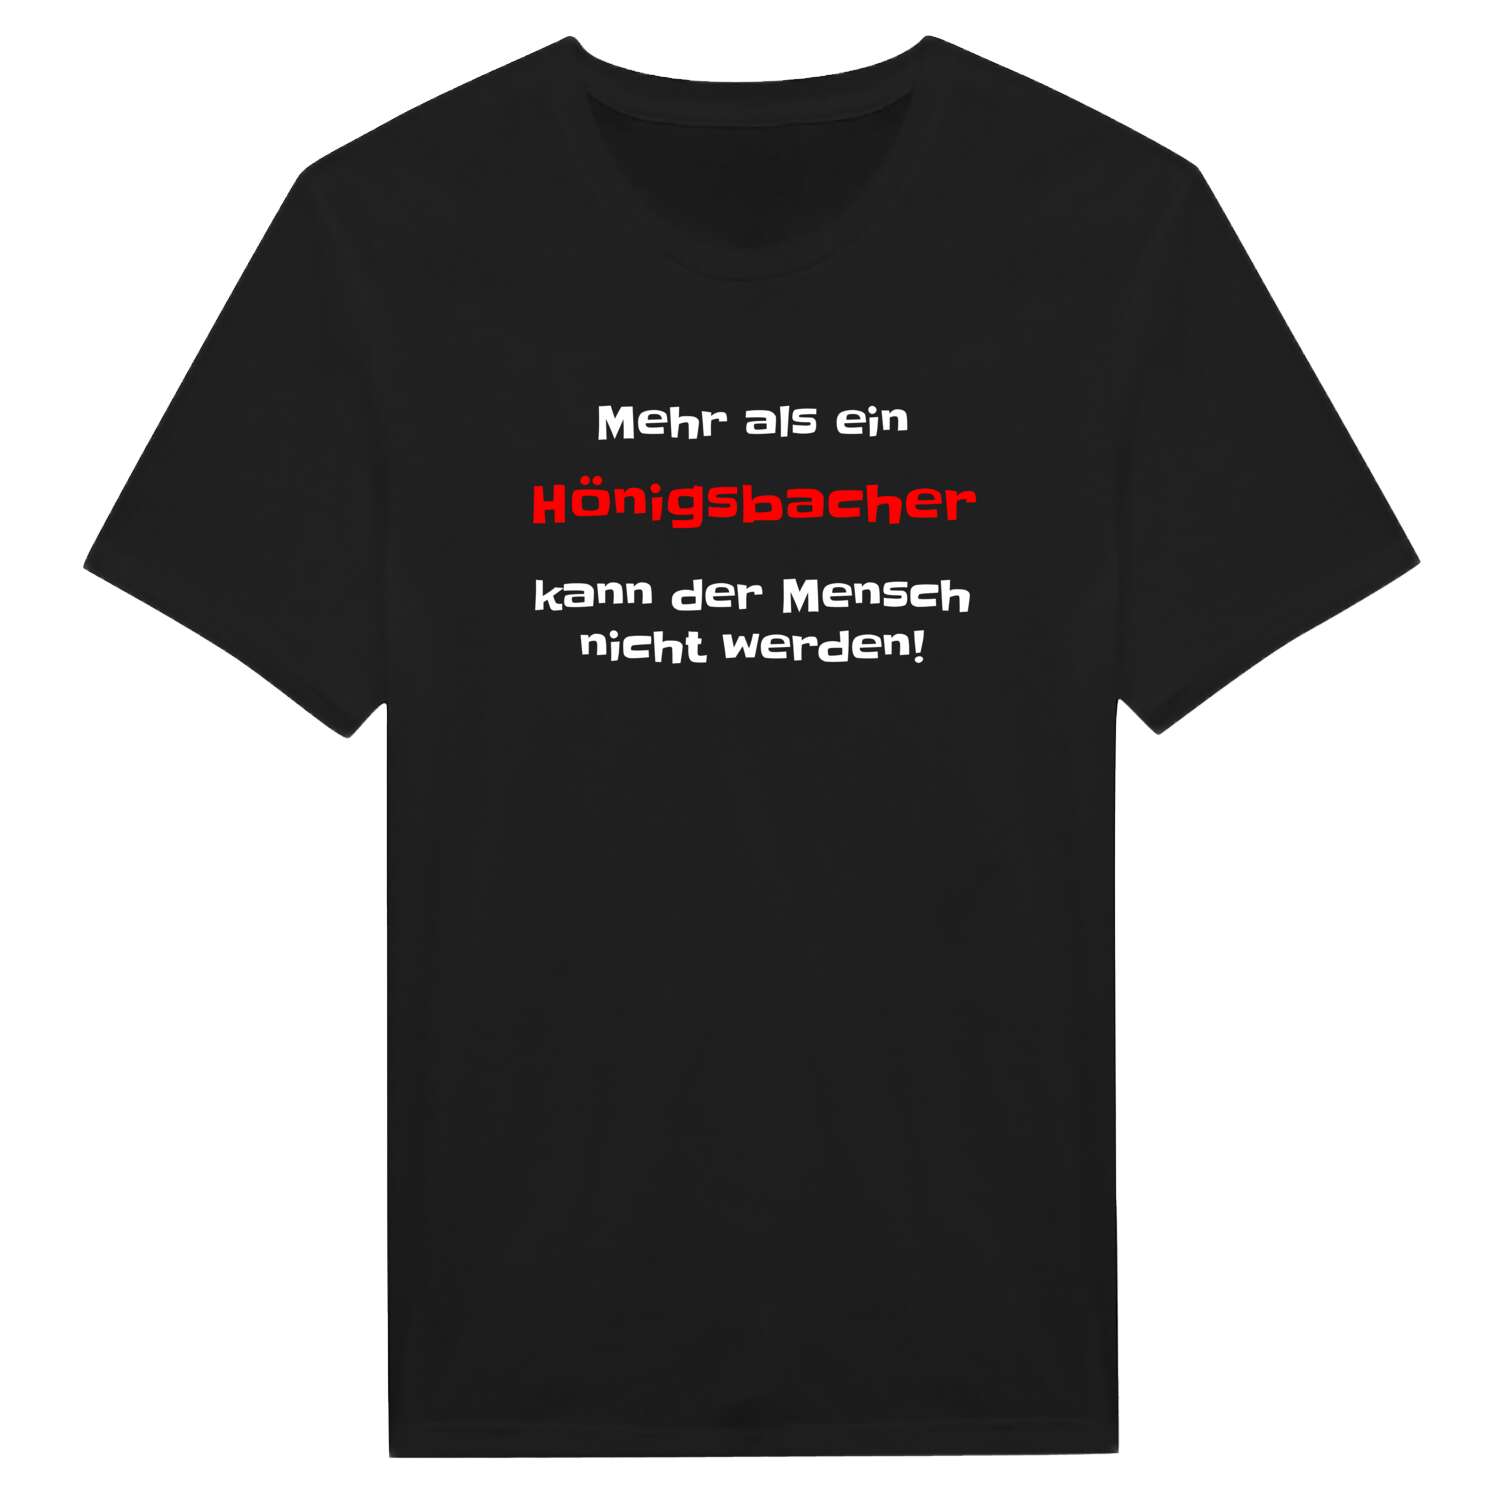 Hönigsbach T-Shirt »Mehr als ein«